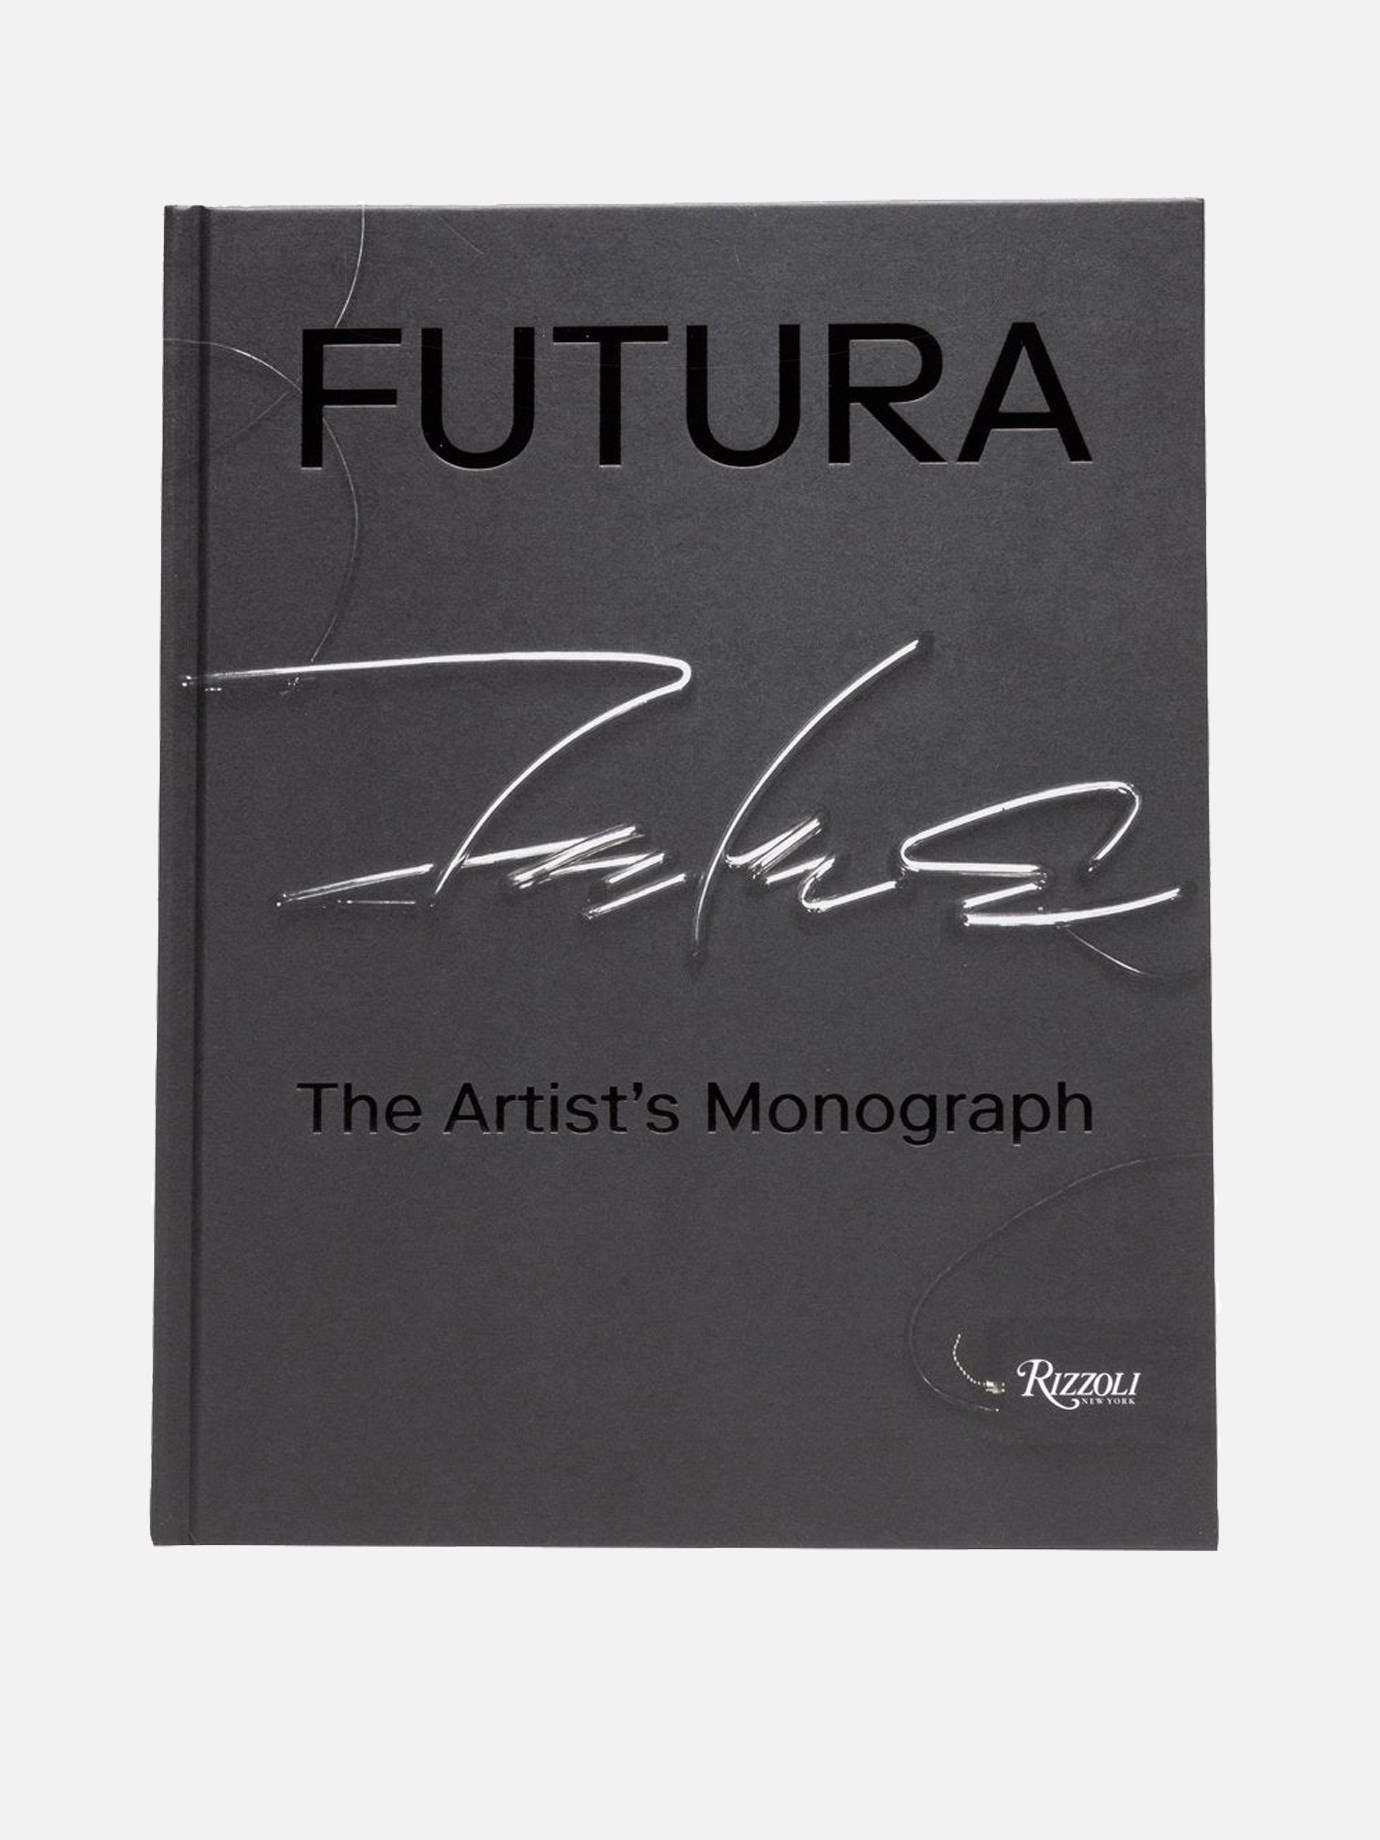  The Artist's Monograph  Rizzoli Futuraby Rizzoli - 3